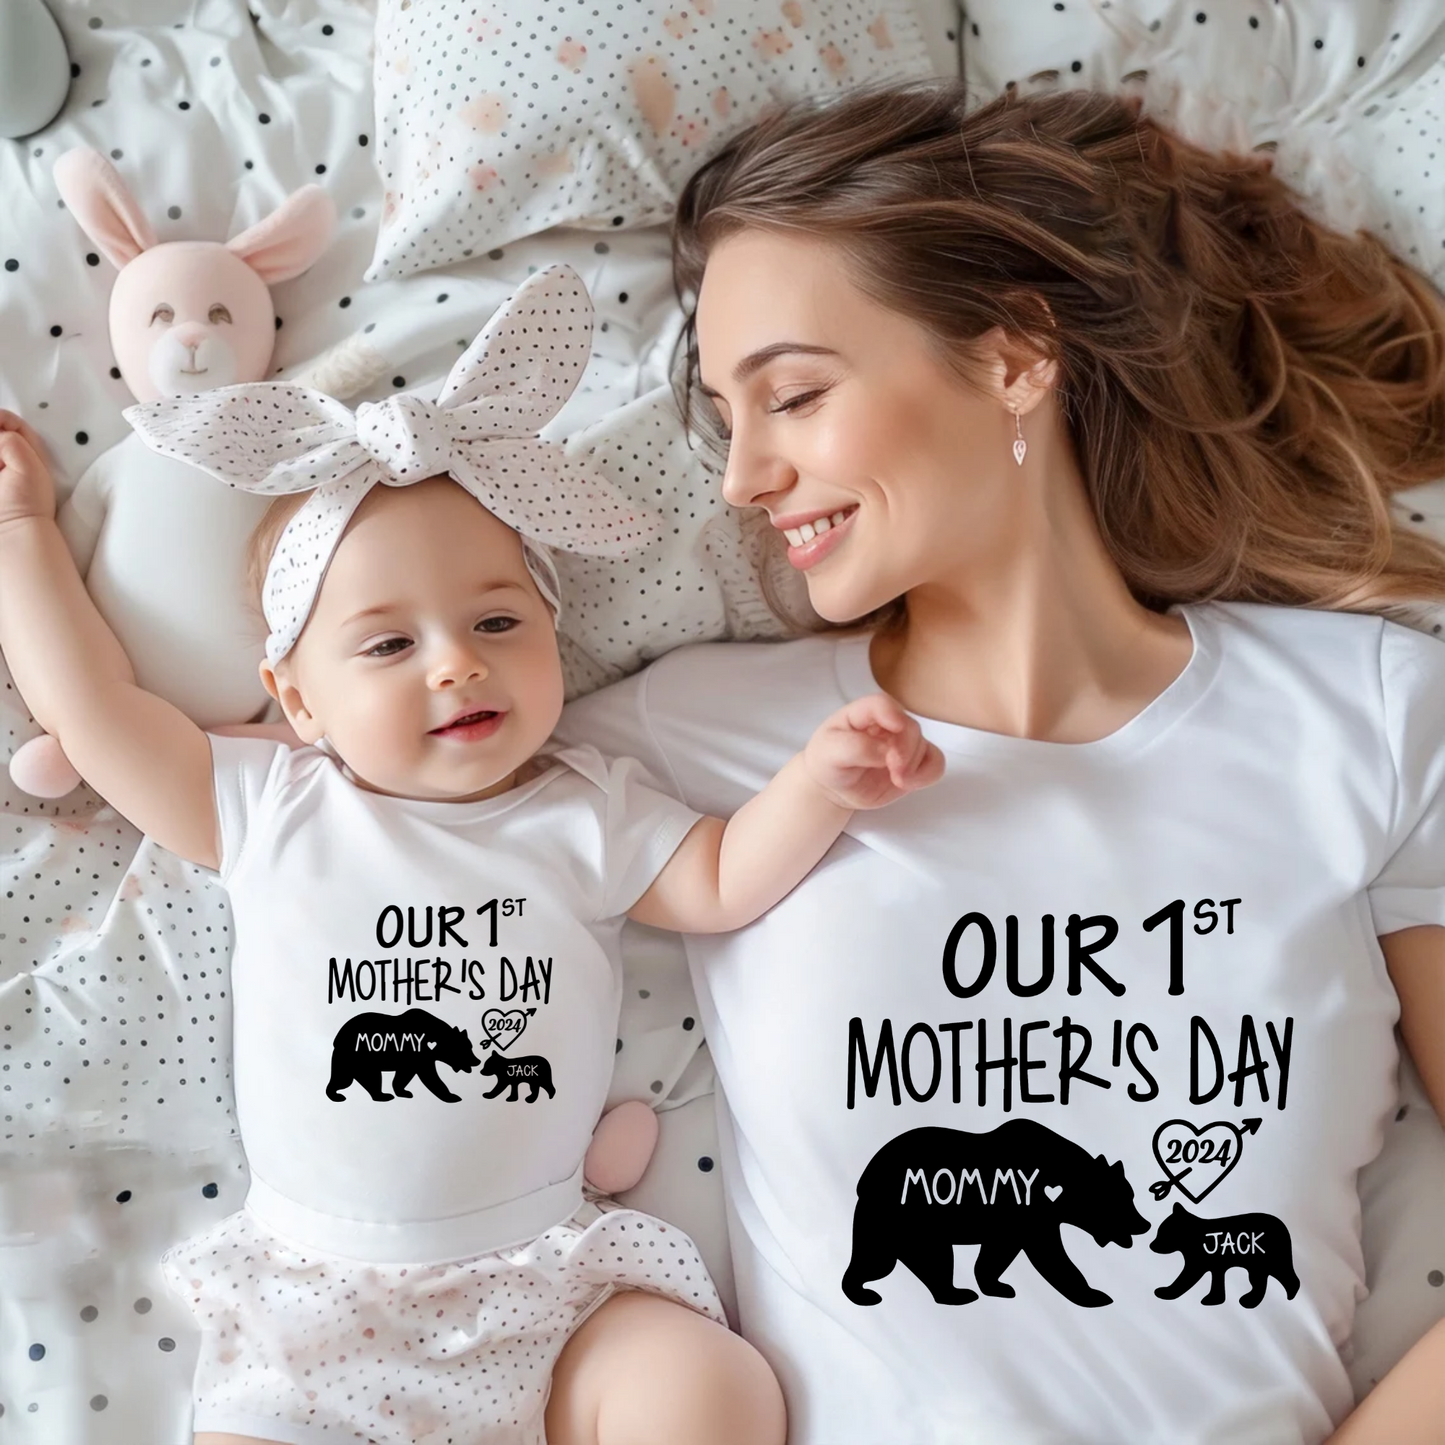 Unser Erster Muttertag - Personalisierte Shirts für Mutter und Kind